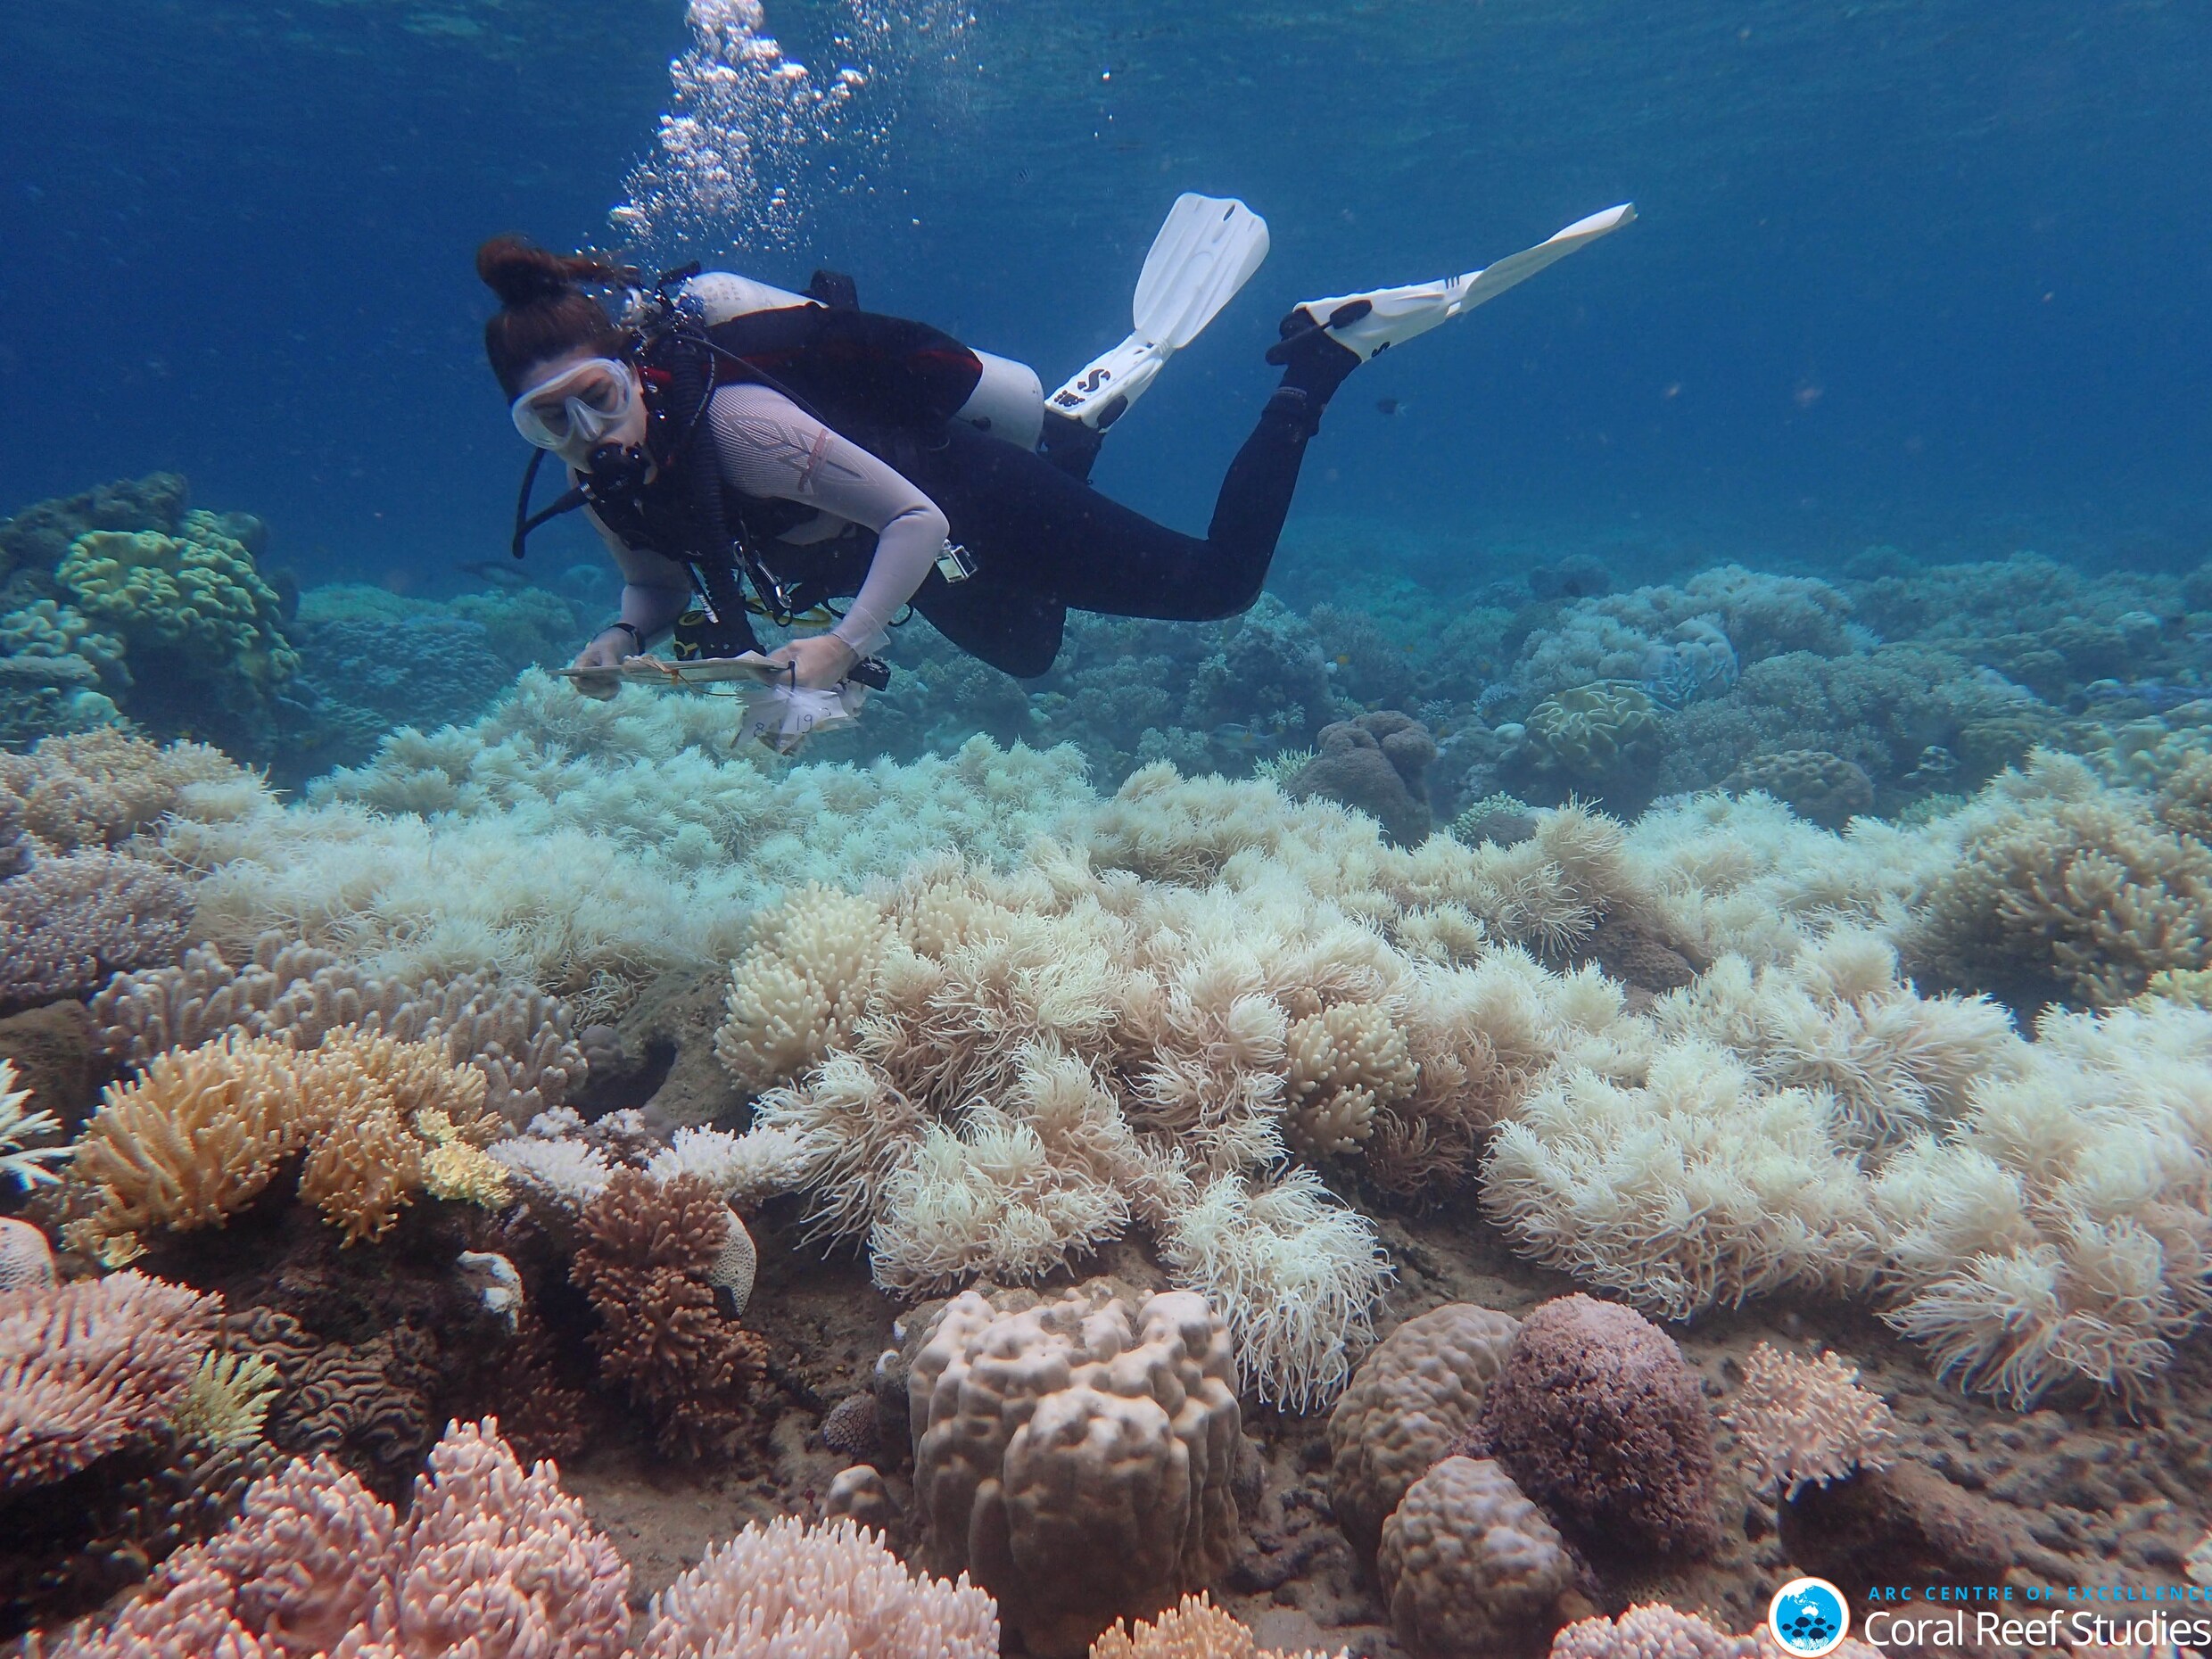 Koralen in Great Barrier Reef zijn er erger aan toe dan gedacht